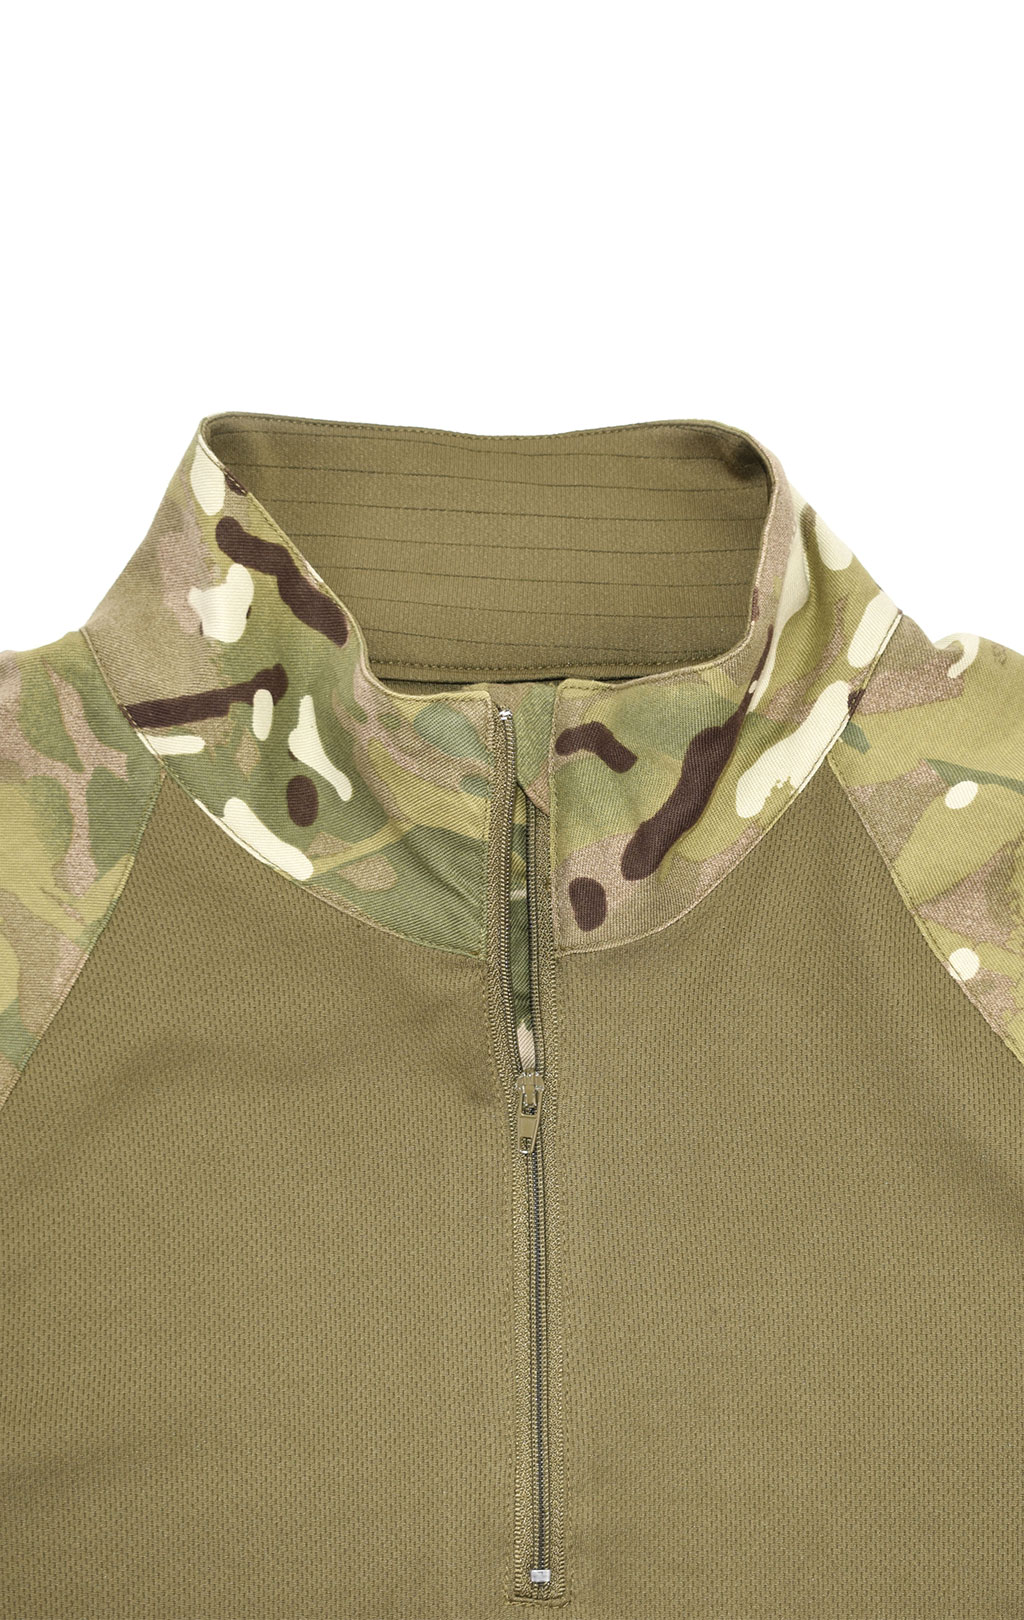 Рубашка Combat Shirt облегчённая mtp/olive б/у Англия